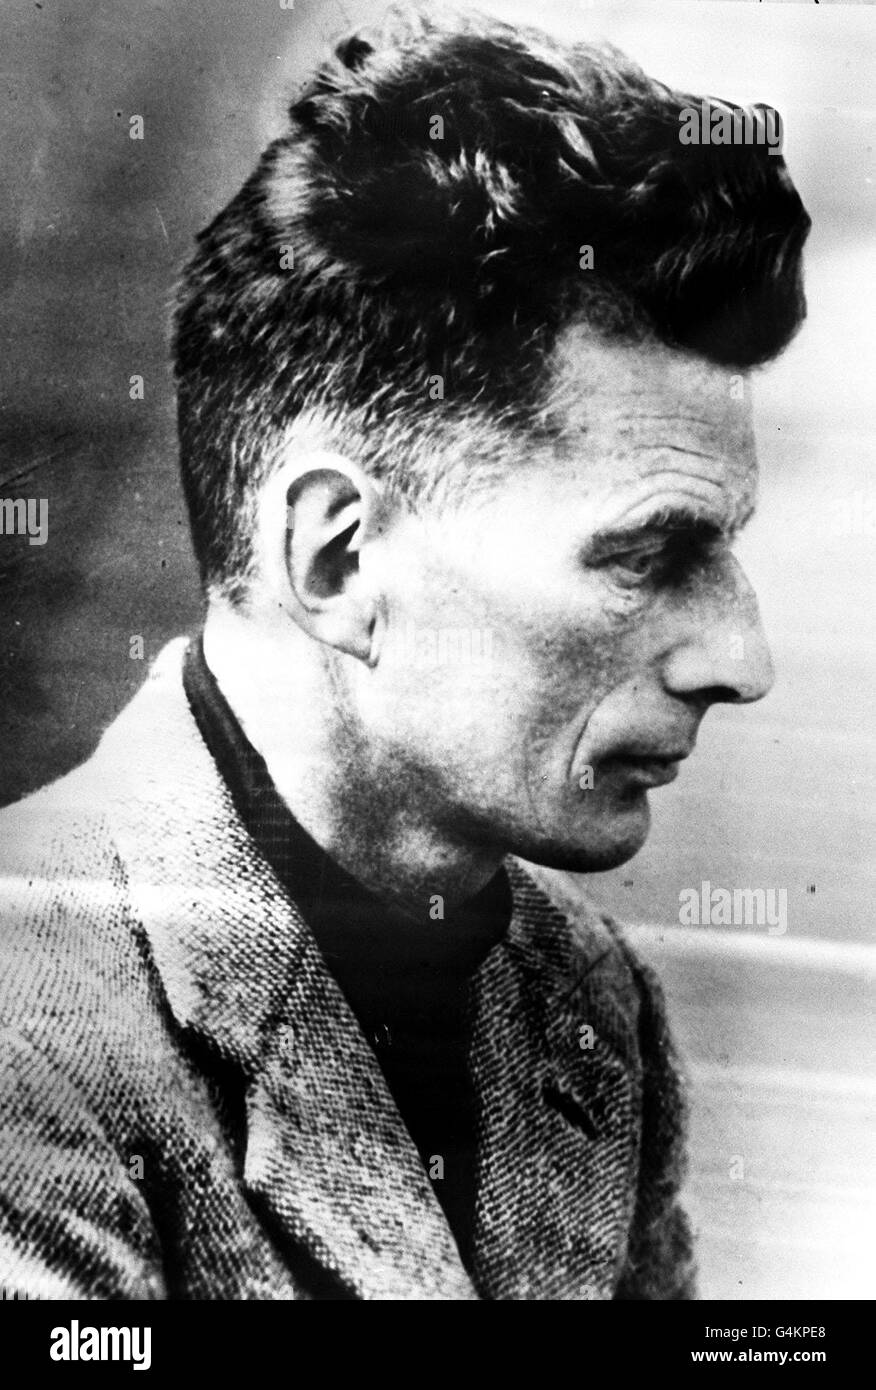 22 DICEMBRE: Fotografia non datata di Samuel Beckett, morto il 22 dicembre 1989, all'età di 83 anni. Foto Stock